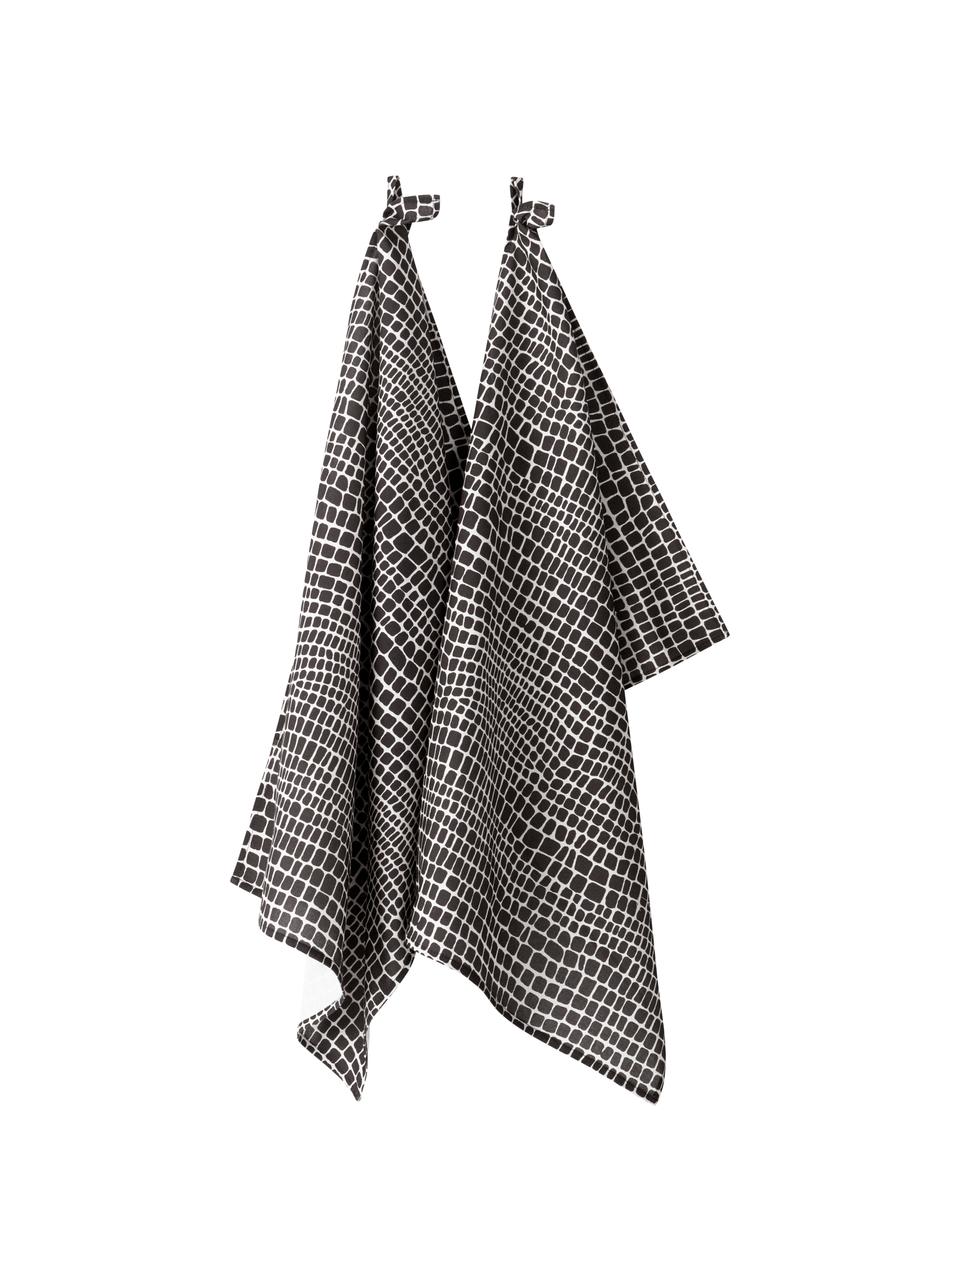 Ręcznik kuchenny Penelope, 2 szt., 100% bawełna pochodząca ze zrównoważonych upraw, Czarny, biały, D 50 x S 70 cm